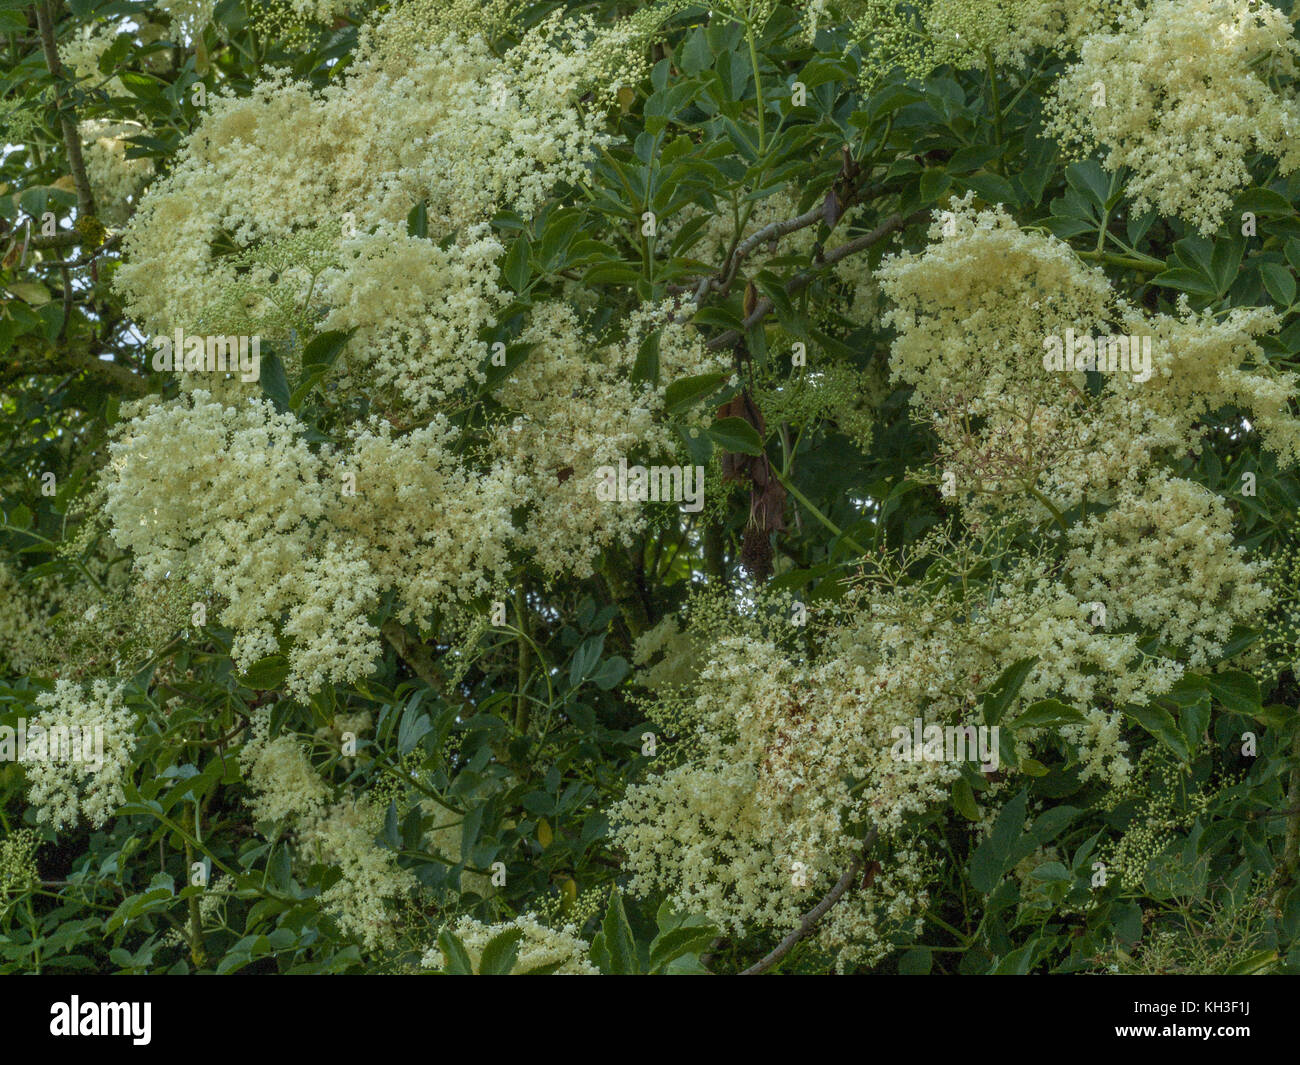 Masses of flowers of the Common Elder / Sambucus nigra. Stock Photo